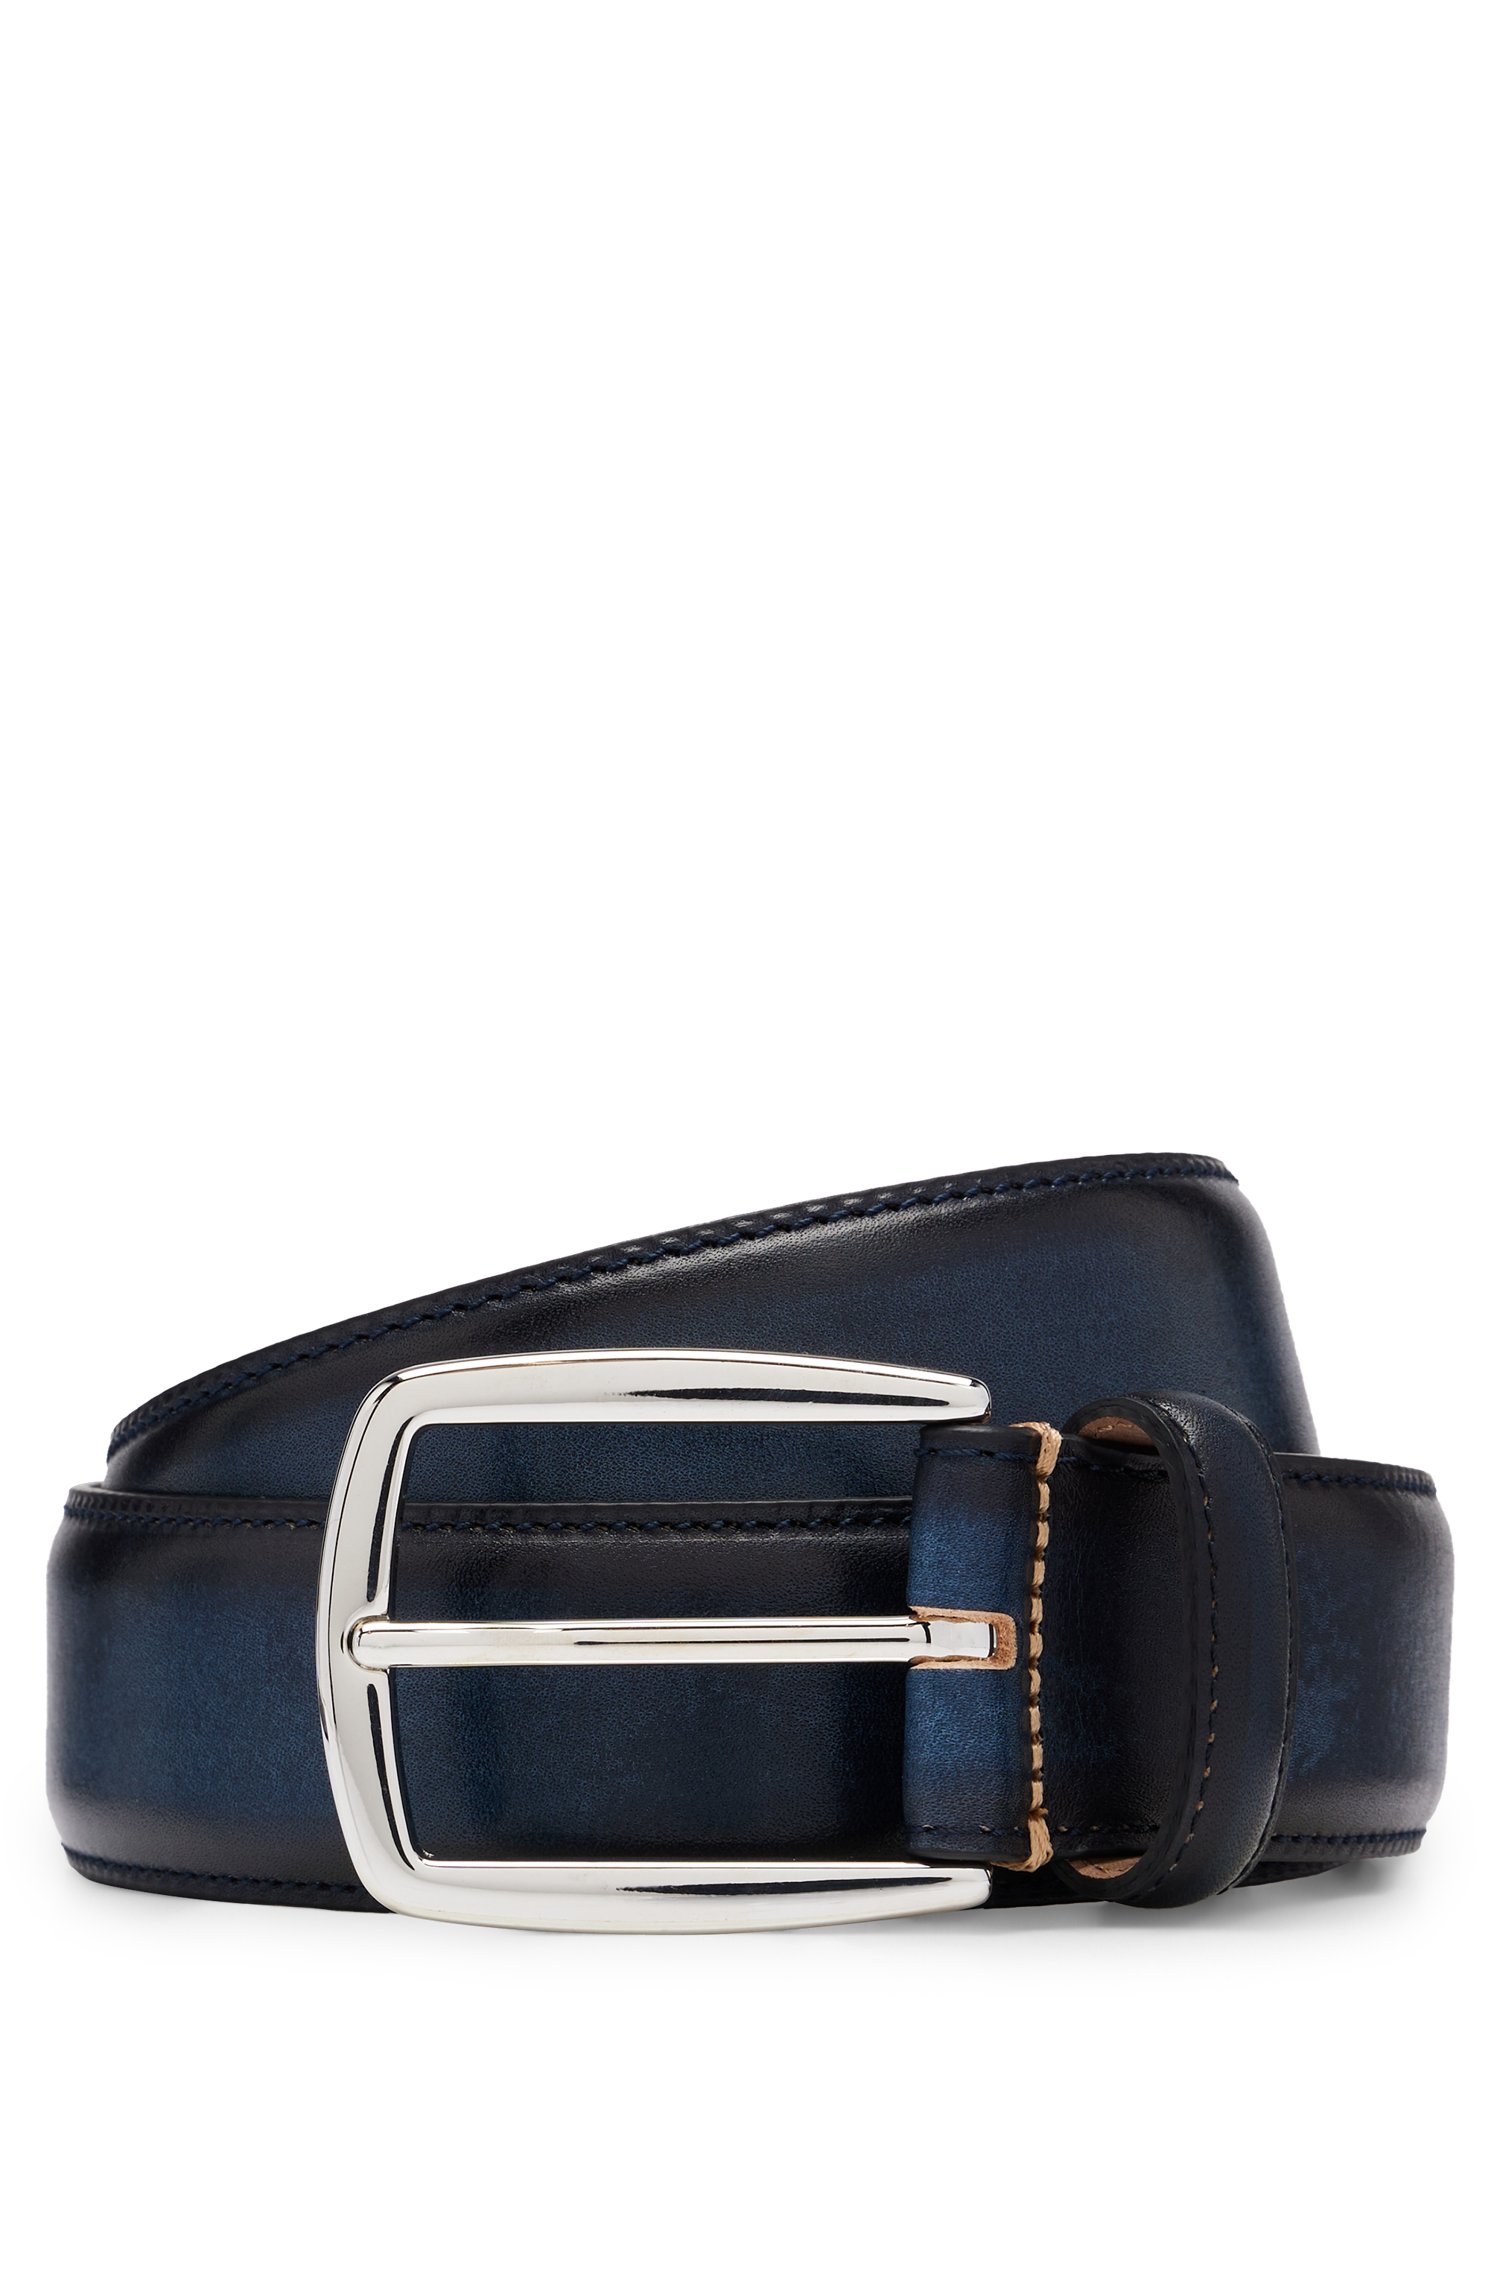 Cinturón de piel italiana con hebilla tono plateado